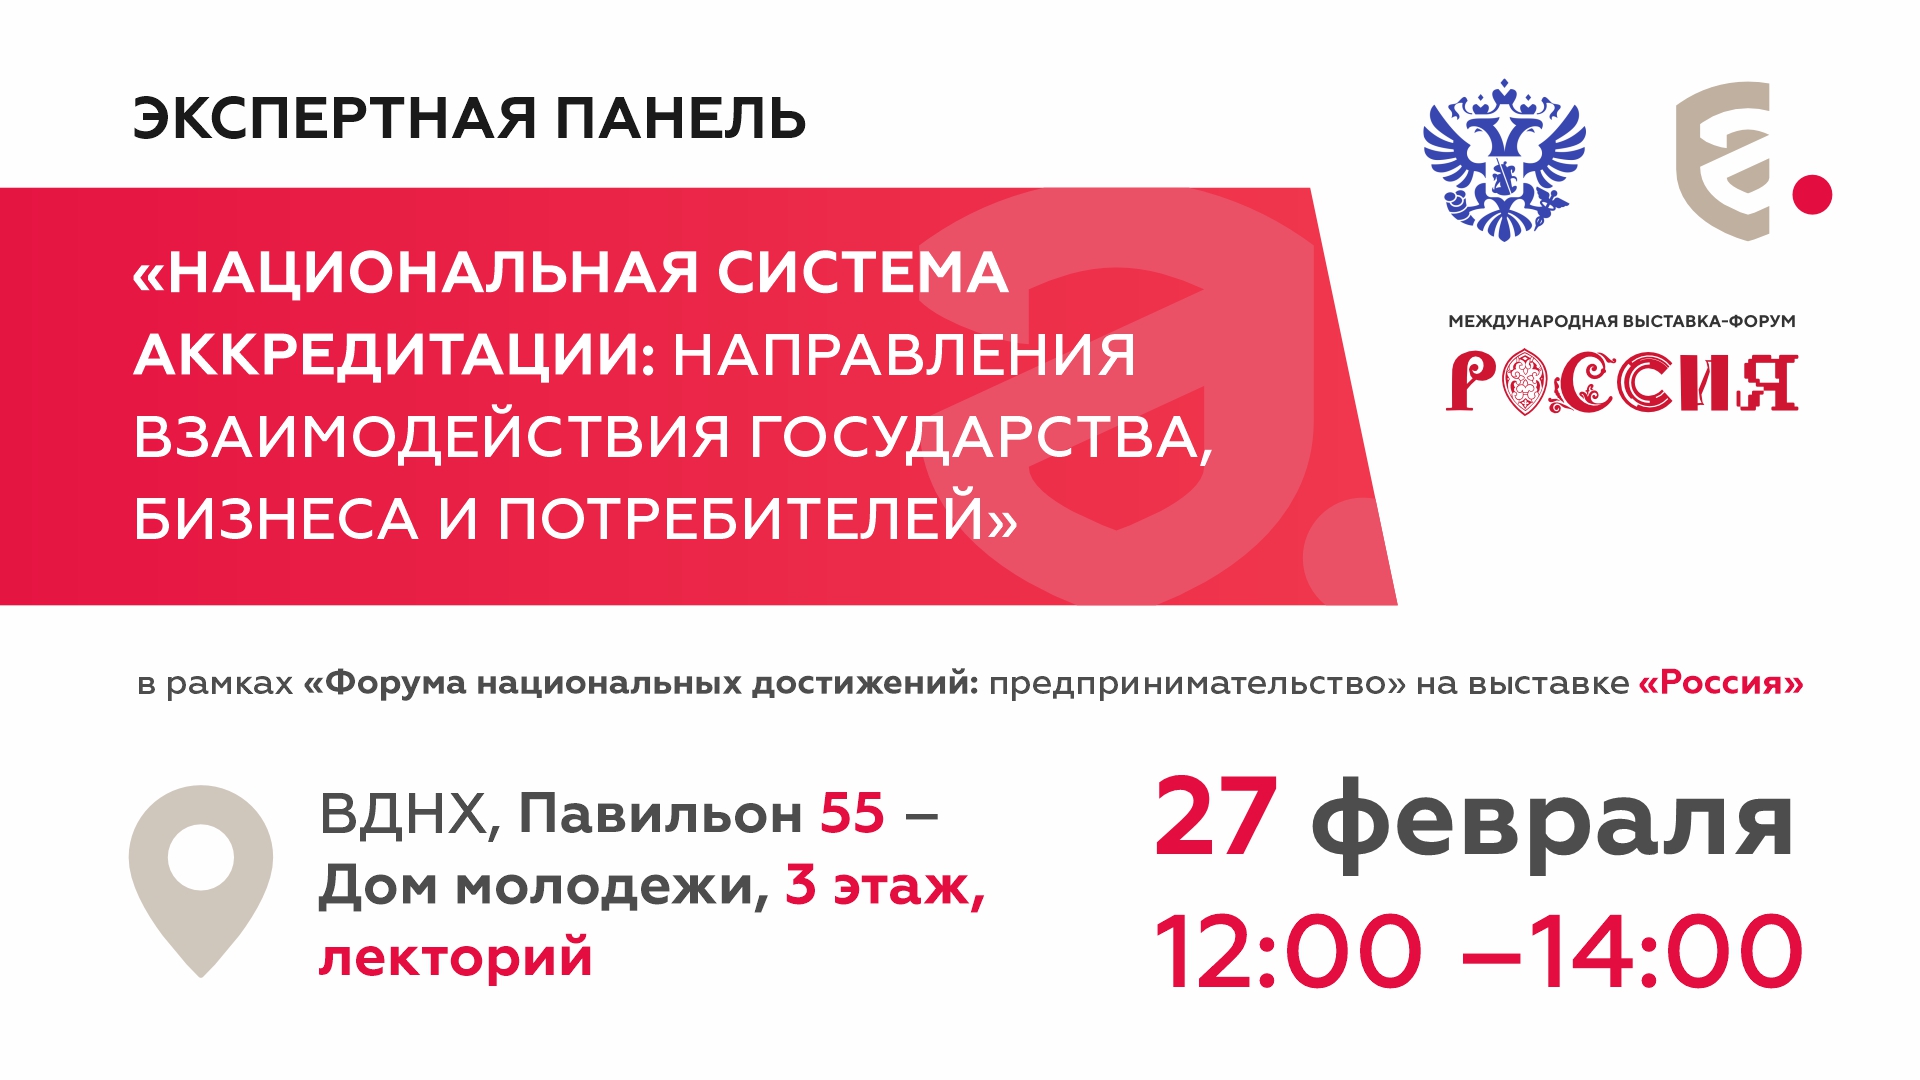 На выставке «Россия» обсудят, как повысить доверие к товарам и услугам на российском рынке